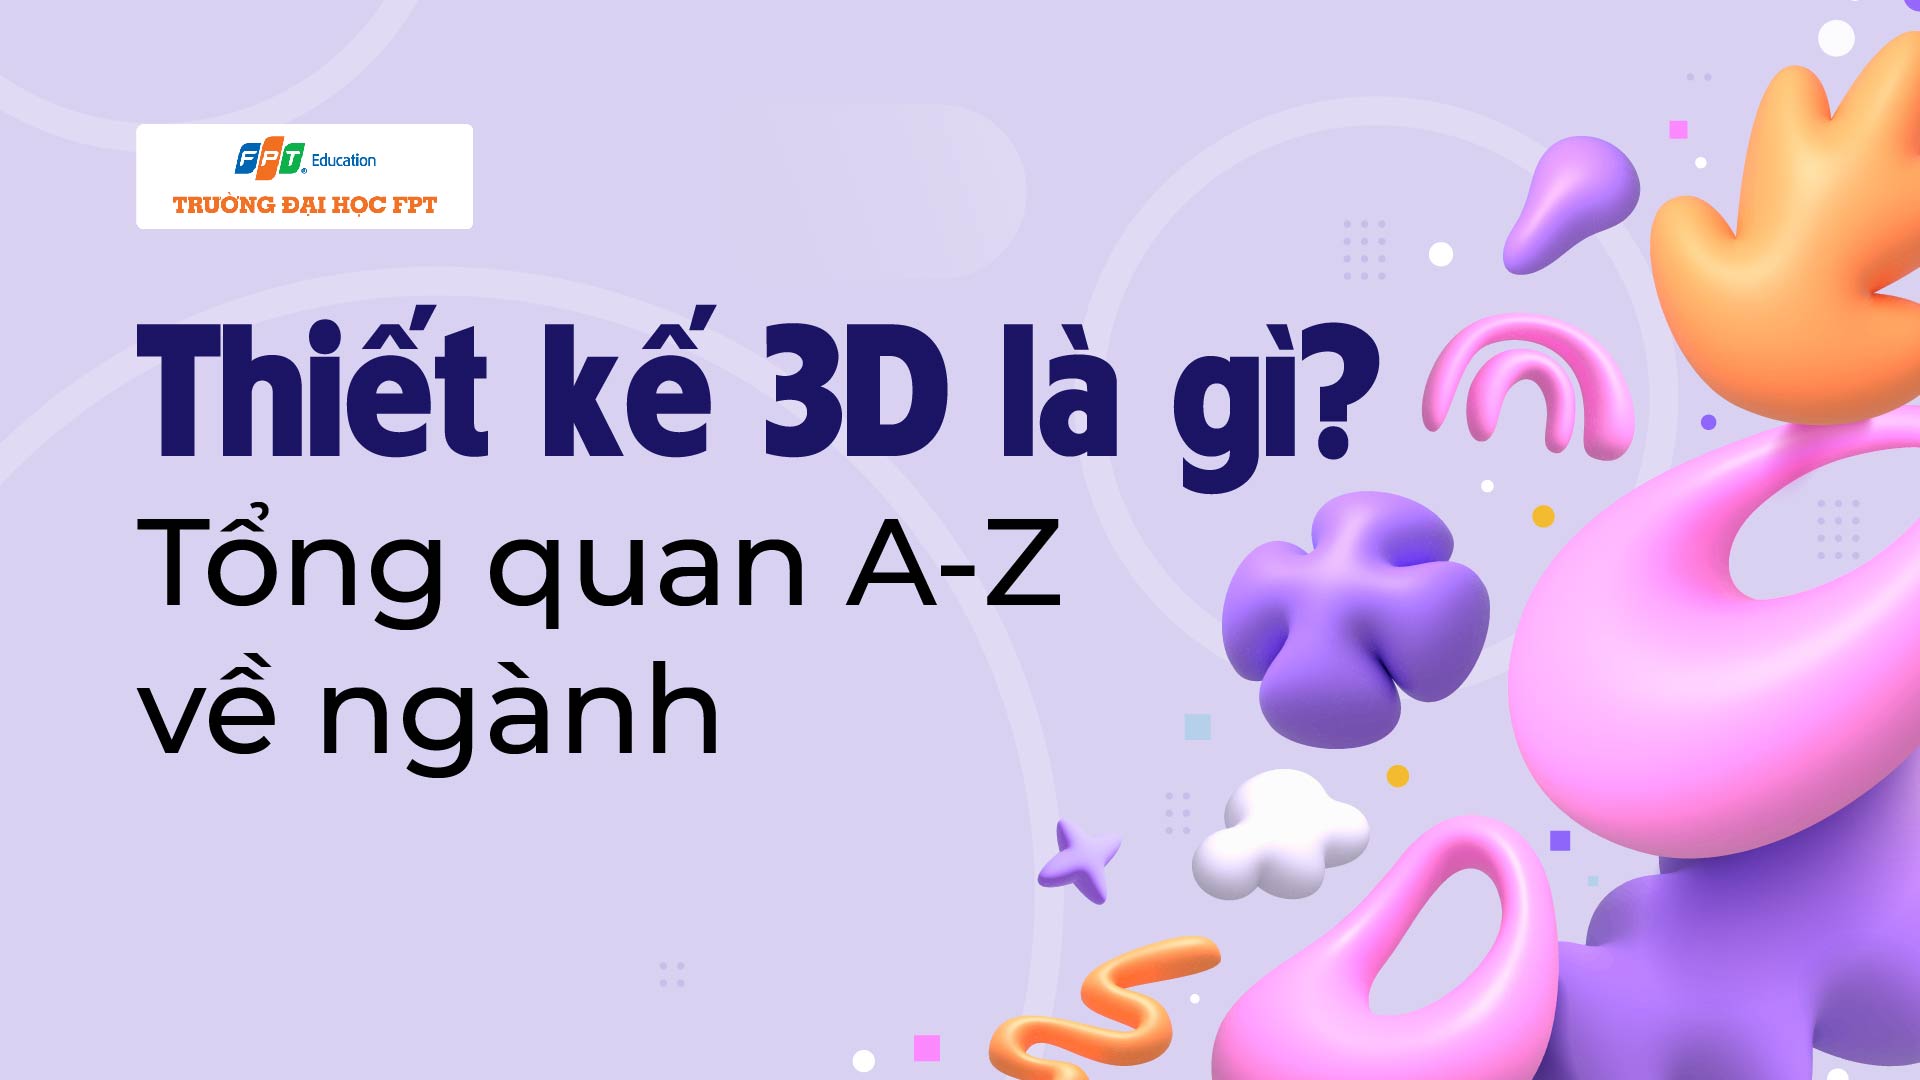 Thiết kế 3D là gì